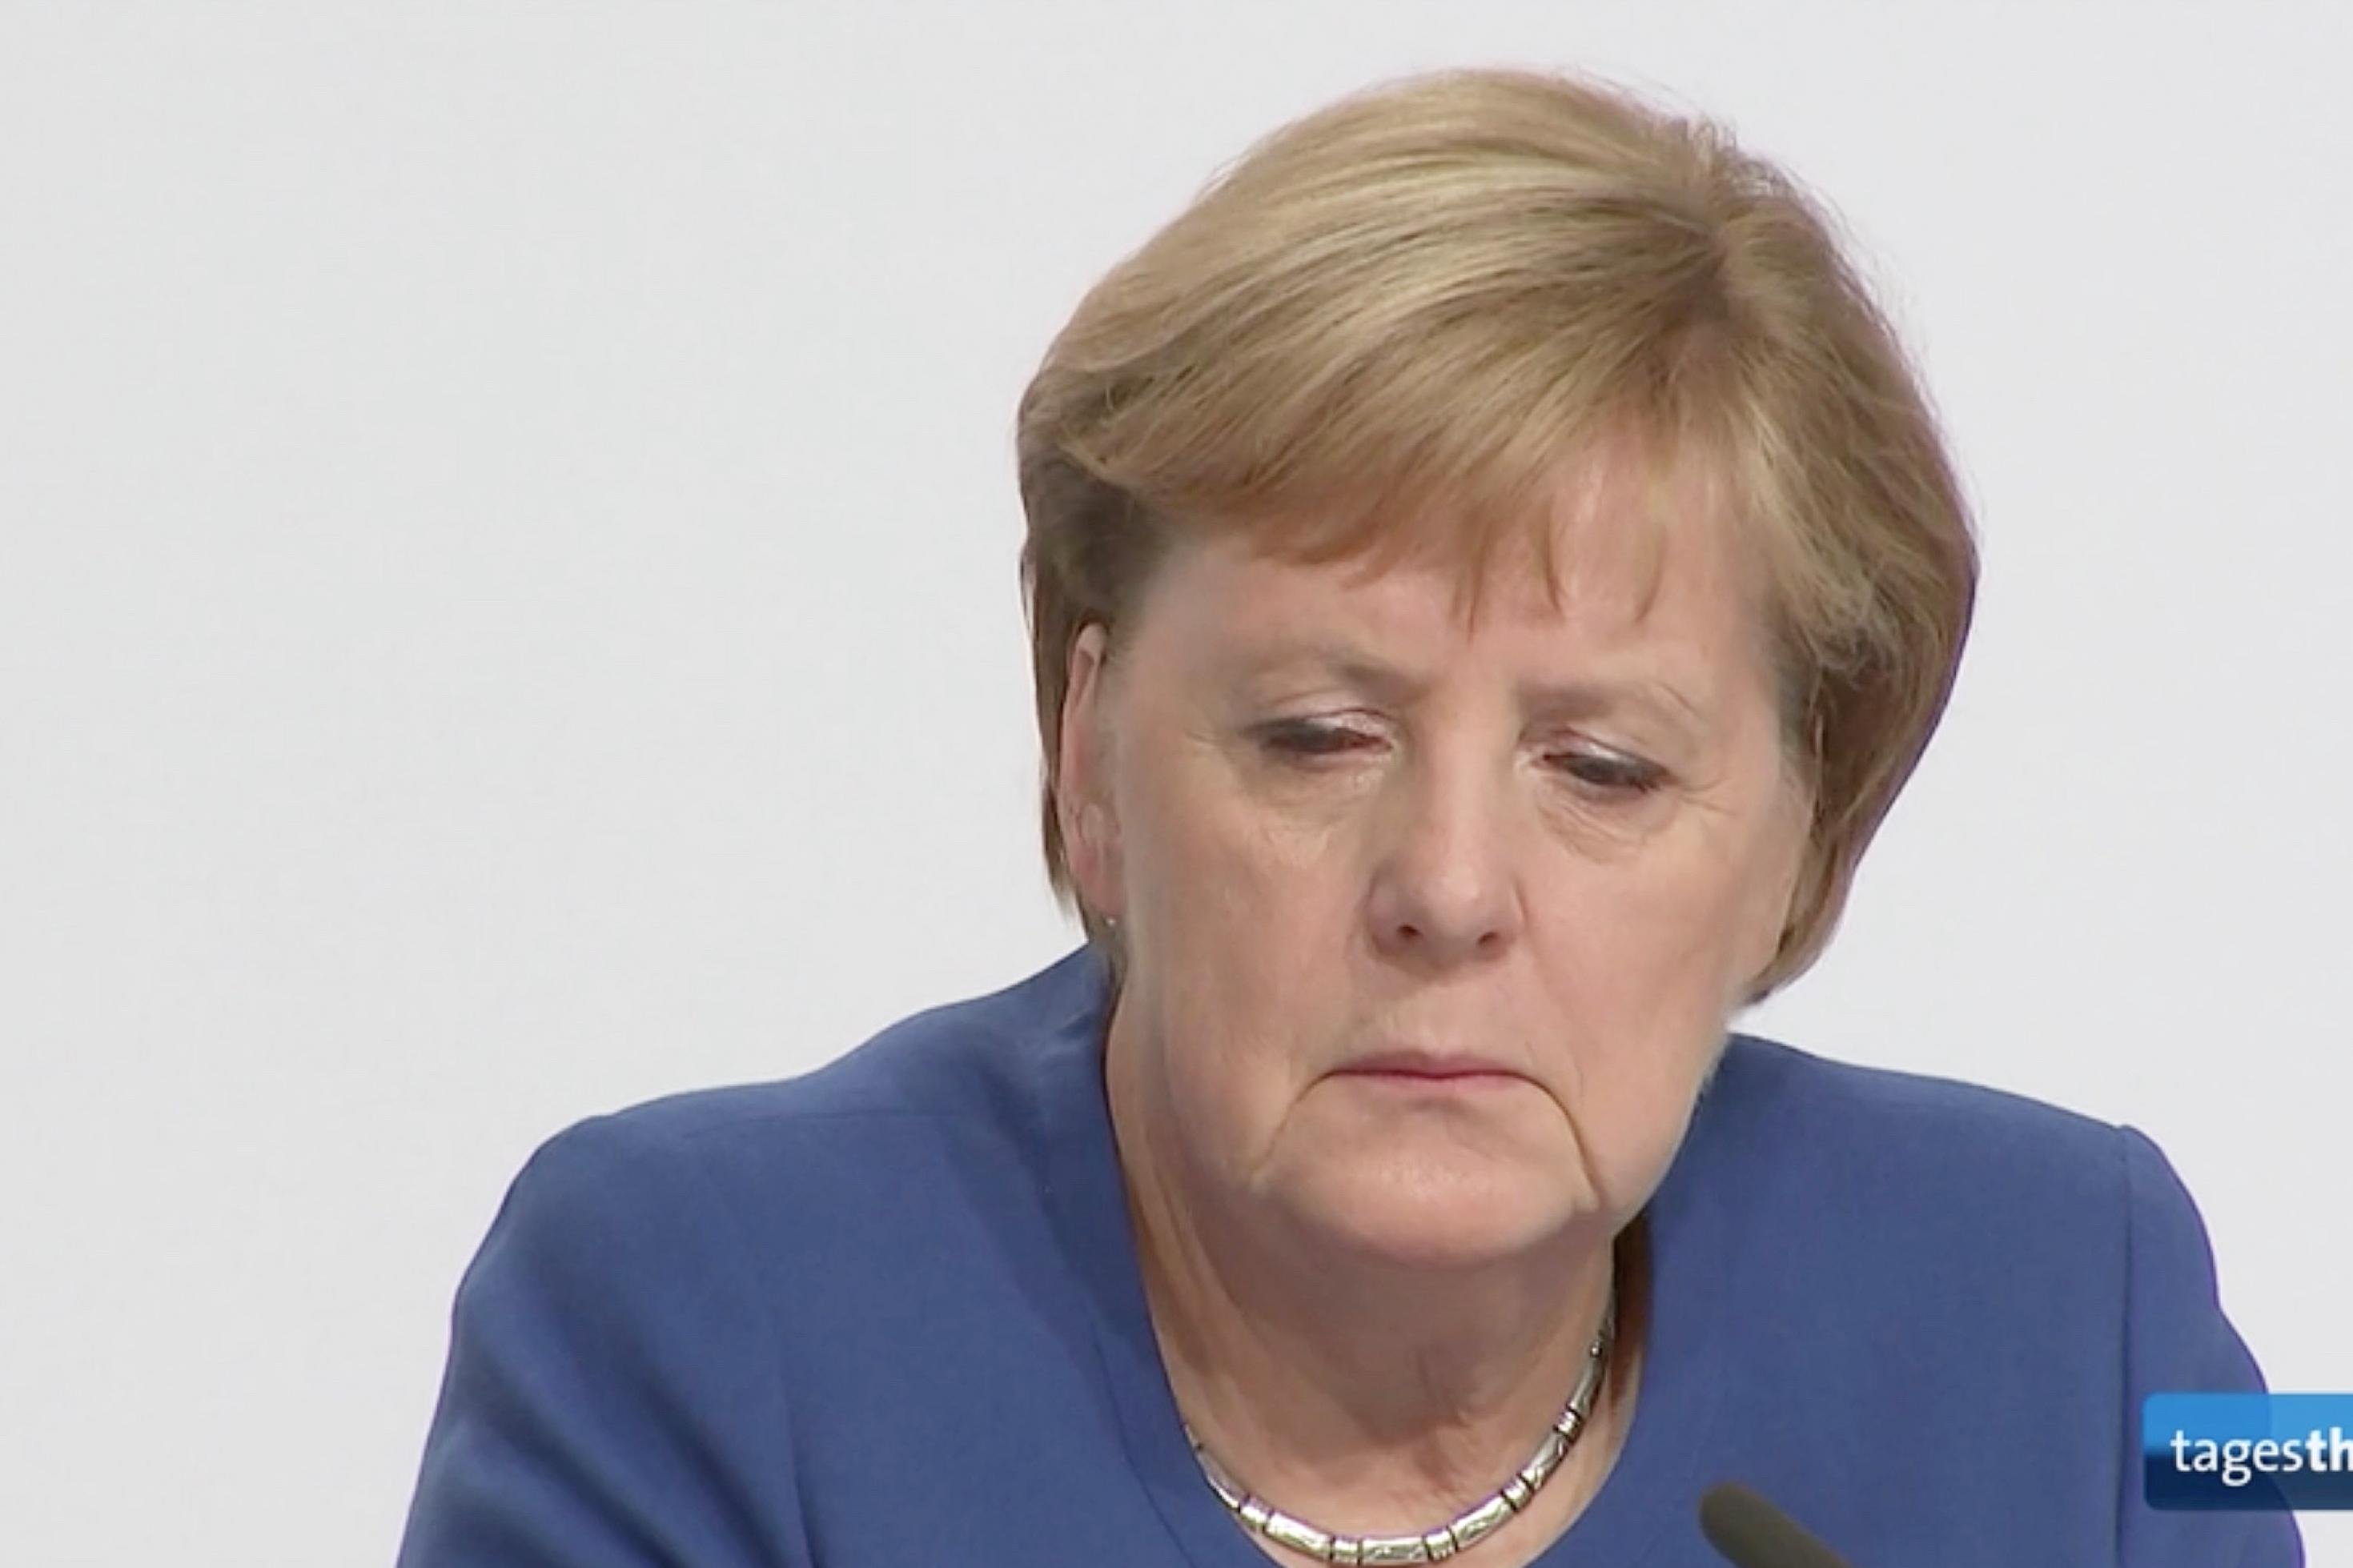 Bundeskanzlerin Angela Merkel (CDU) bei der Pressekonferenz zum Klimapaket der Bundesregierung am 20.9.2019. Auf dem Bild blickt sie schräg nach unten und sieht müde aus.